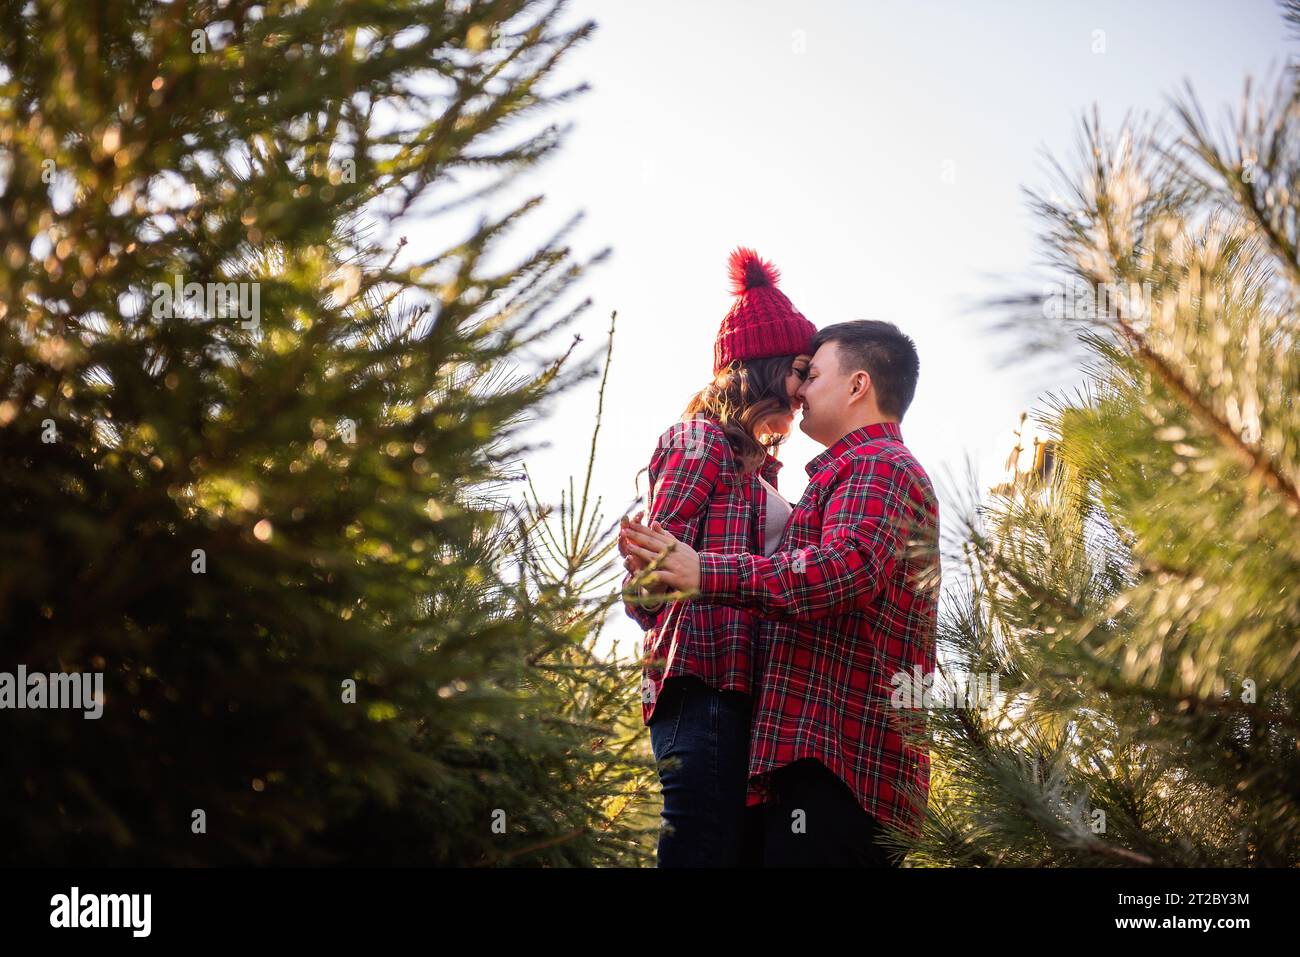 Coppia allegra innamorata in camicie rosse a scacchi, cappelli a maglia si fanno beffe e ridono tra i verdi mercatini dell'albero di Natale. Il giovane si tiene per mano Foto Stock